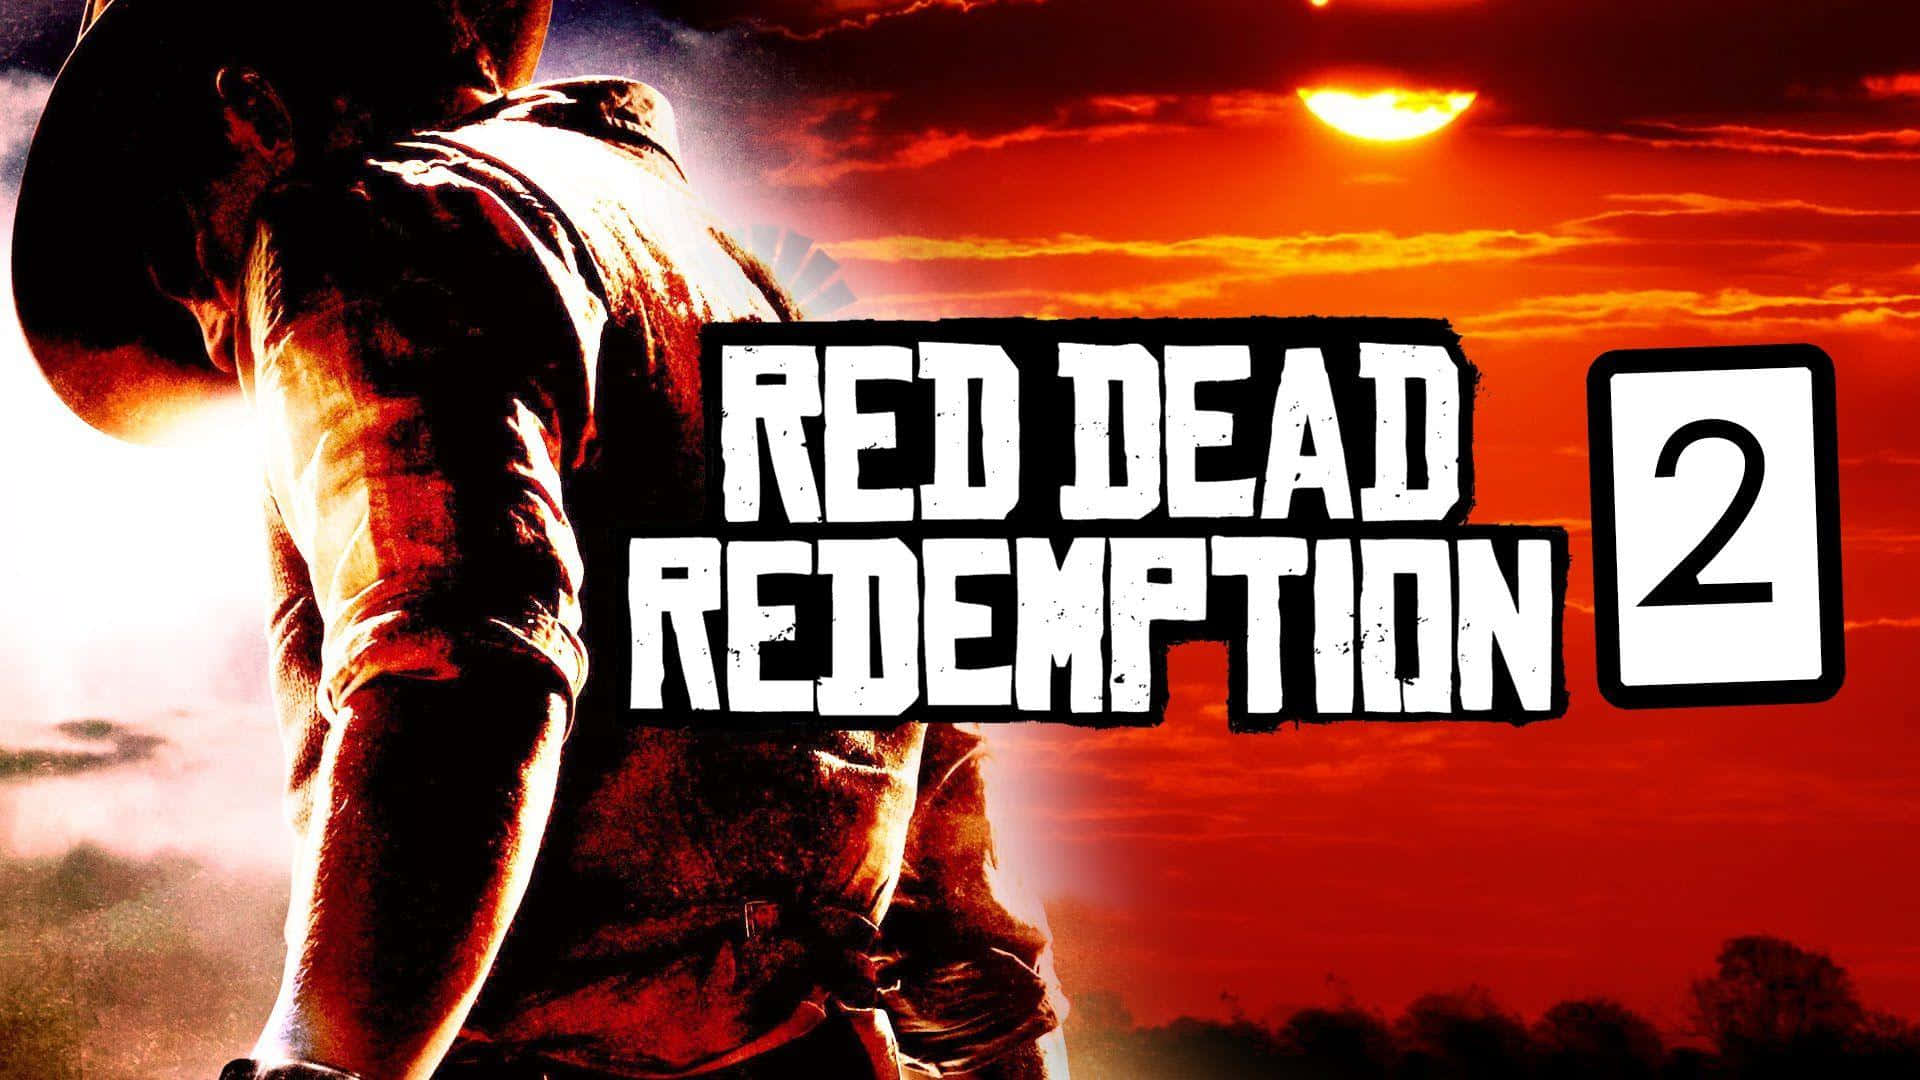 Udforsk Vild West i Red Dead Redemption 2 Full Hd Wallpaper